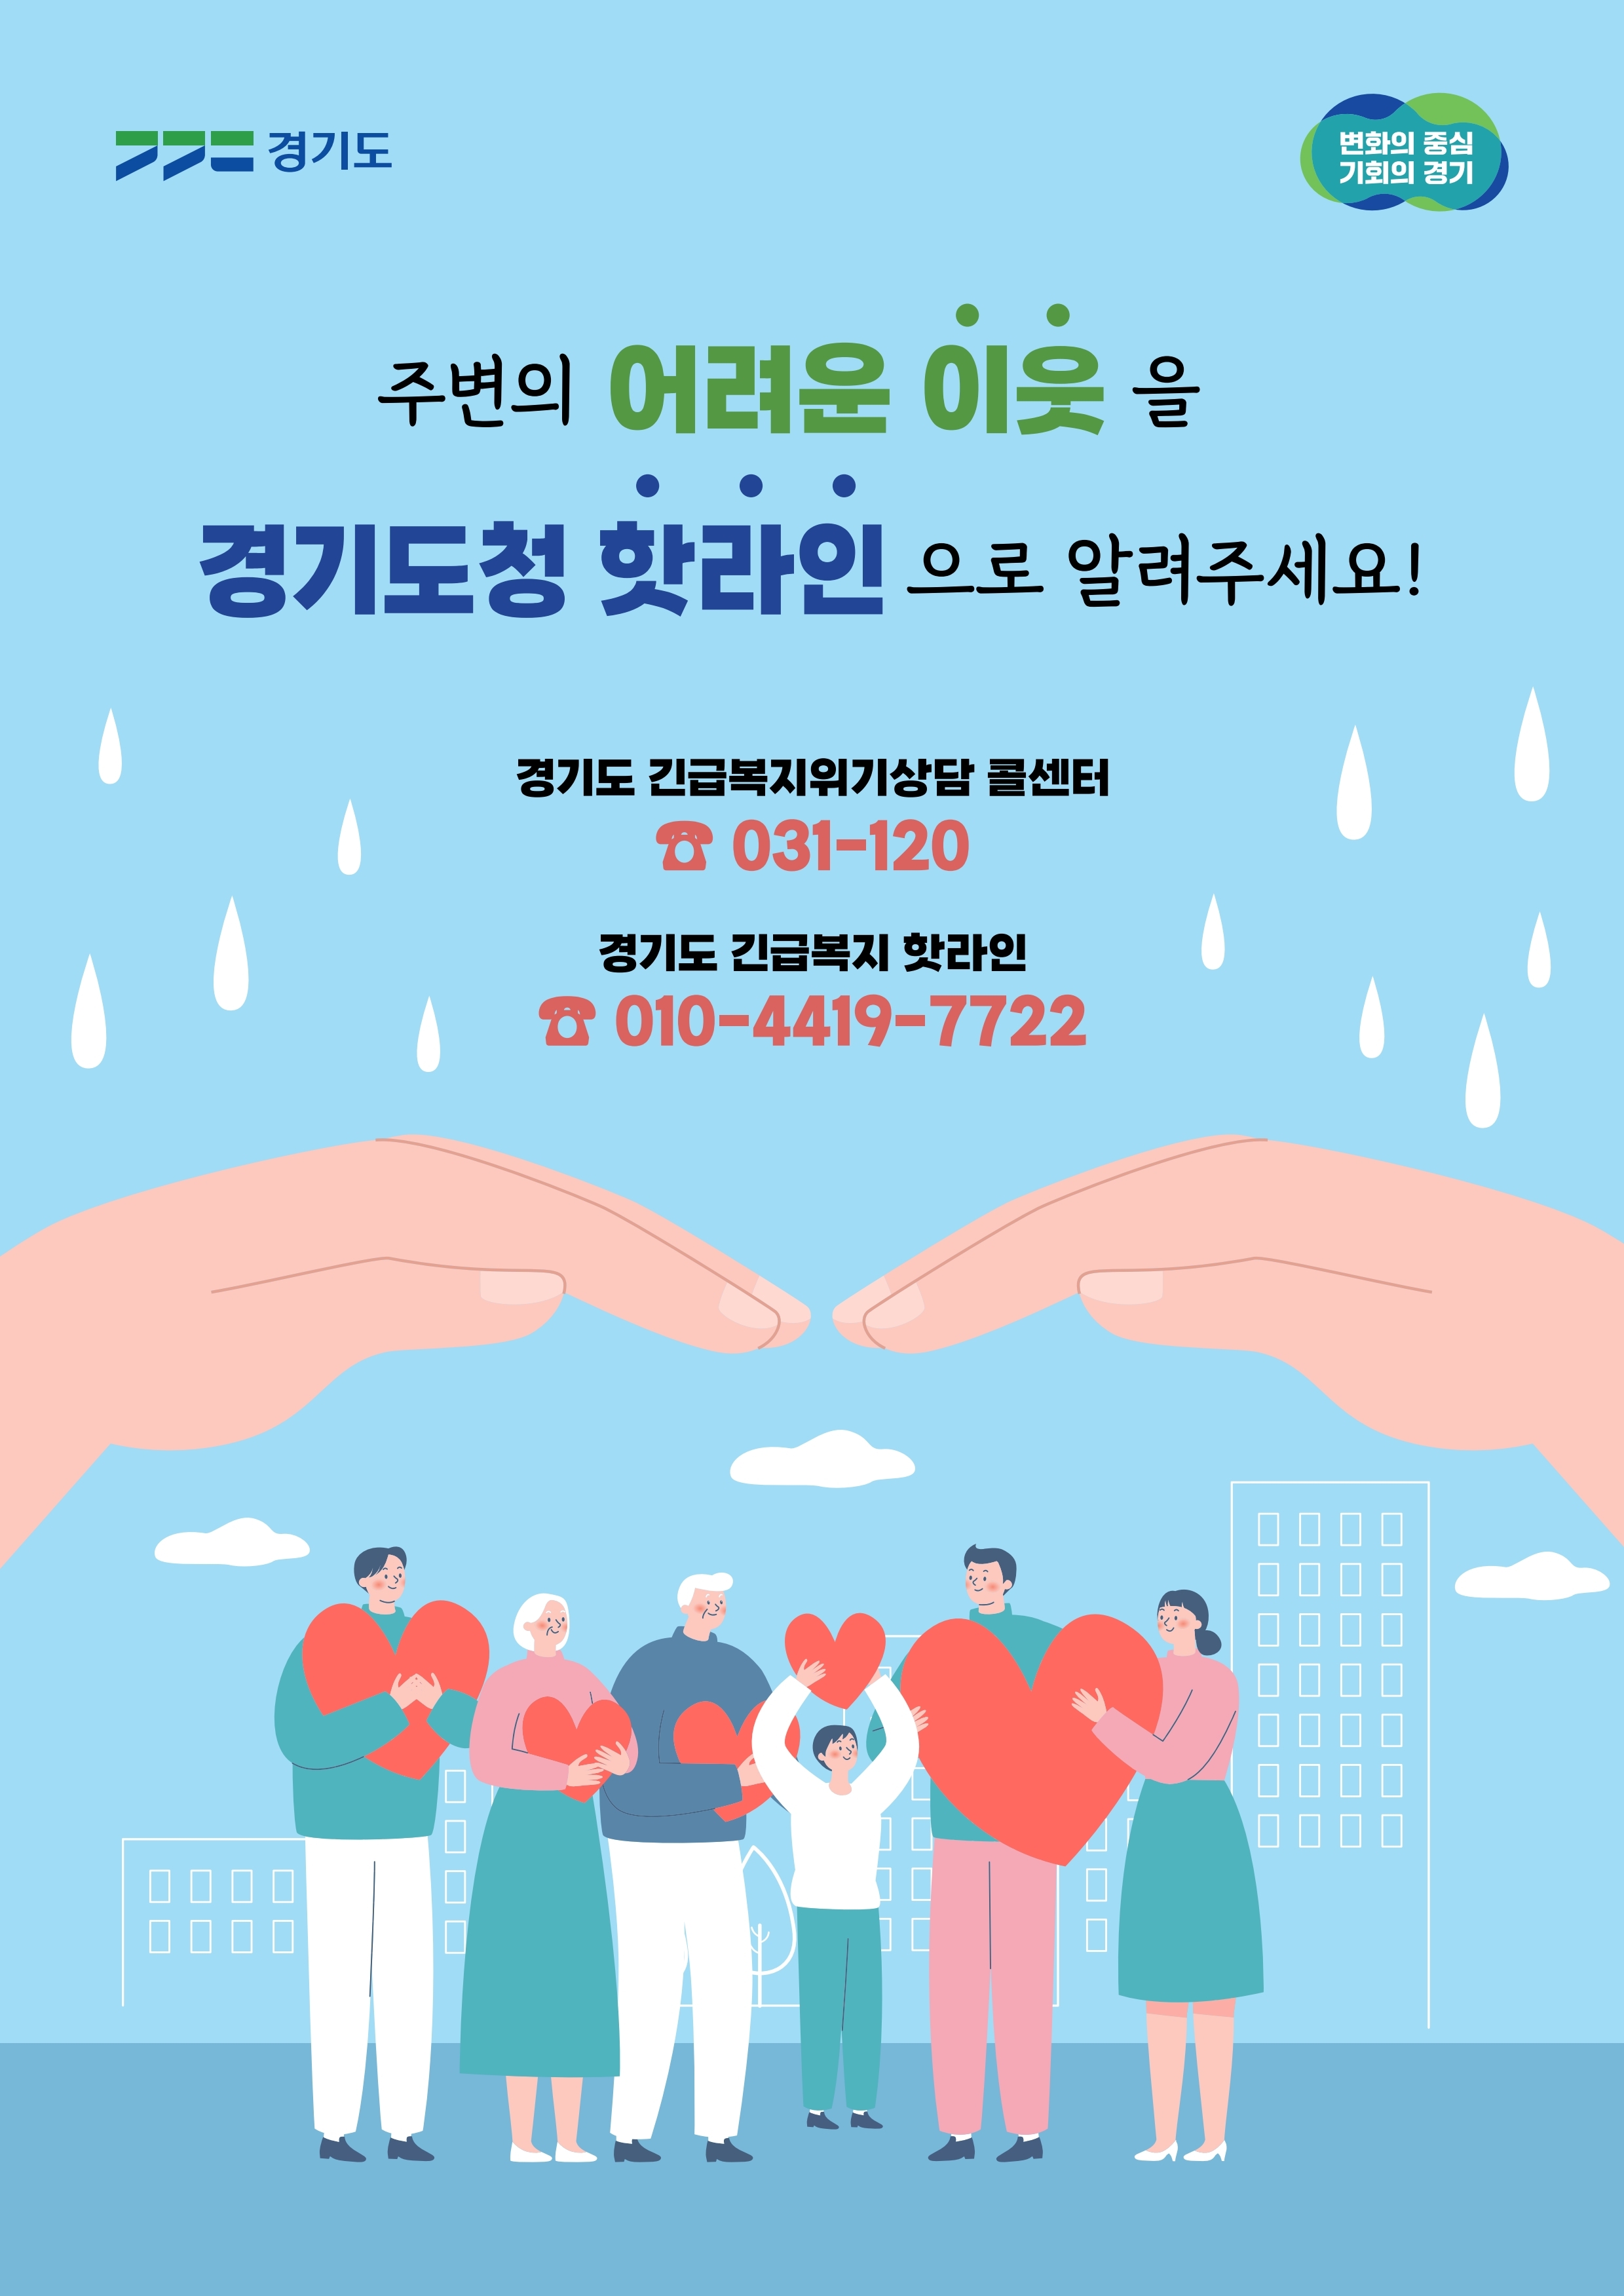 [공유] 경기도 긴급복지 위기상담 콜센터 운영 안내